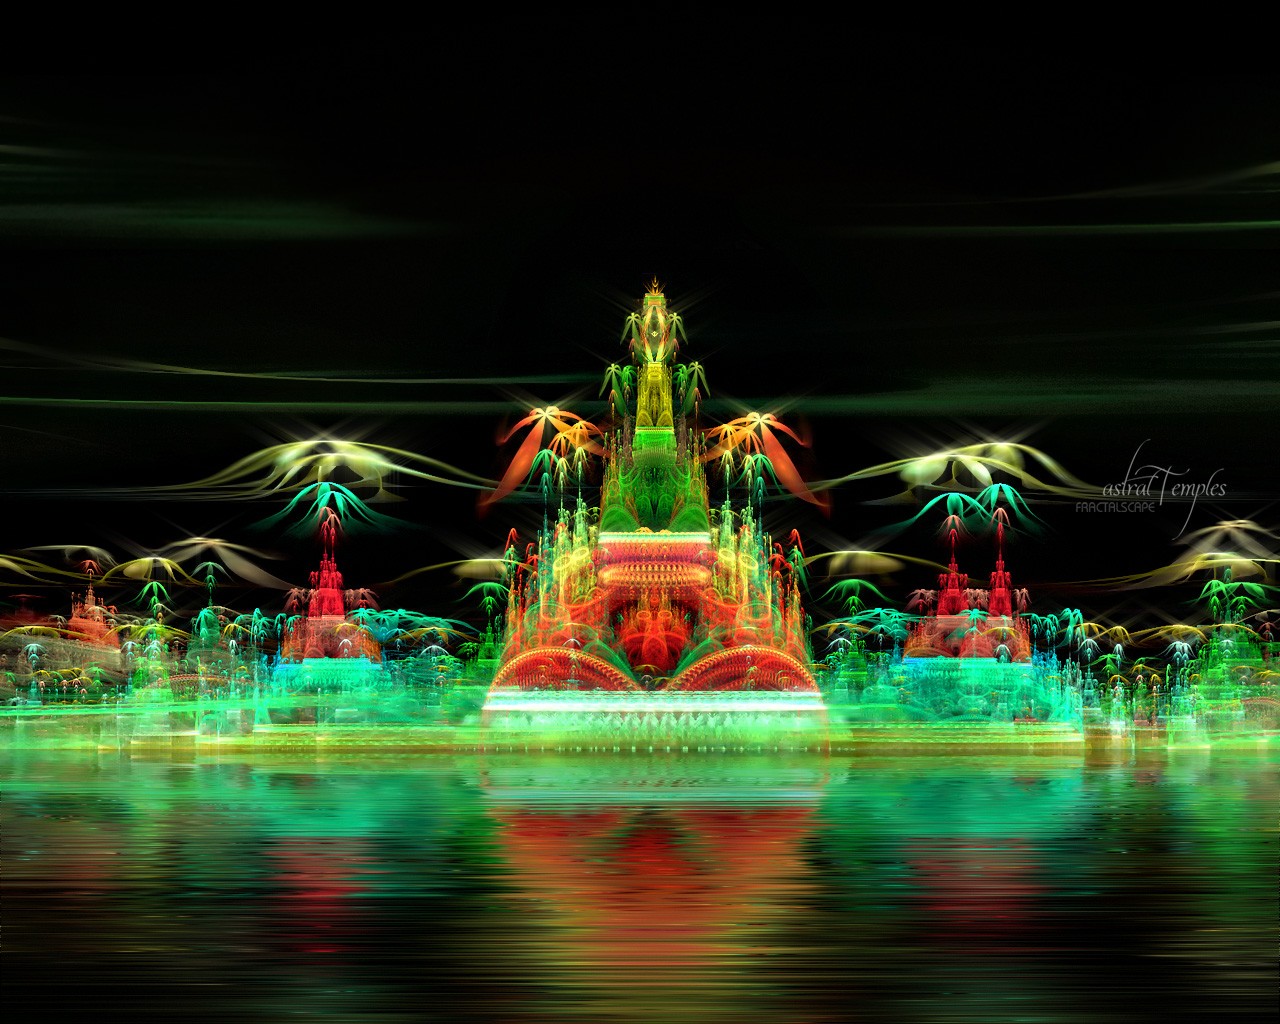 fond d'écran de nuit 3d,vert,lumière,l'eau,fontaine,caractéristique de l'eau